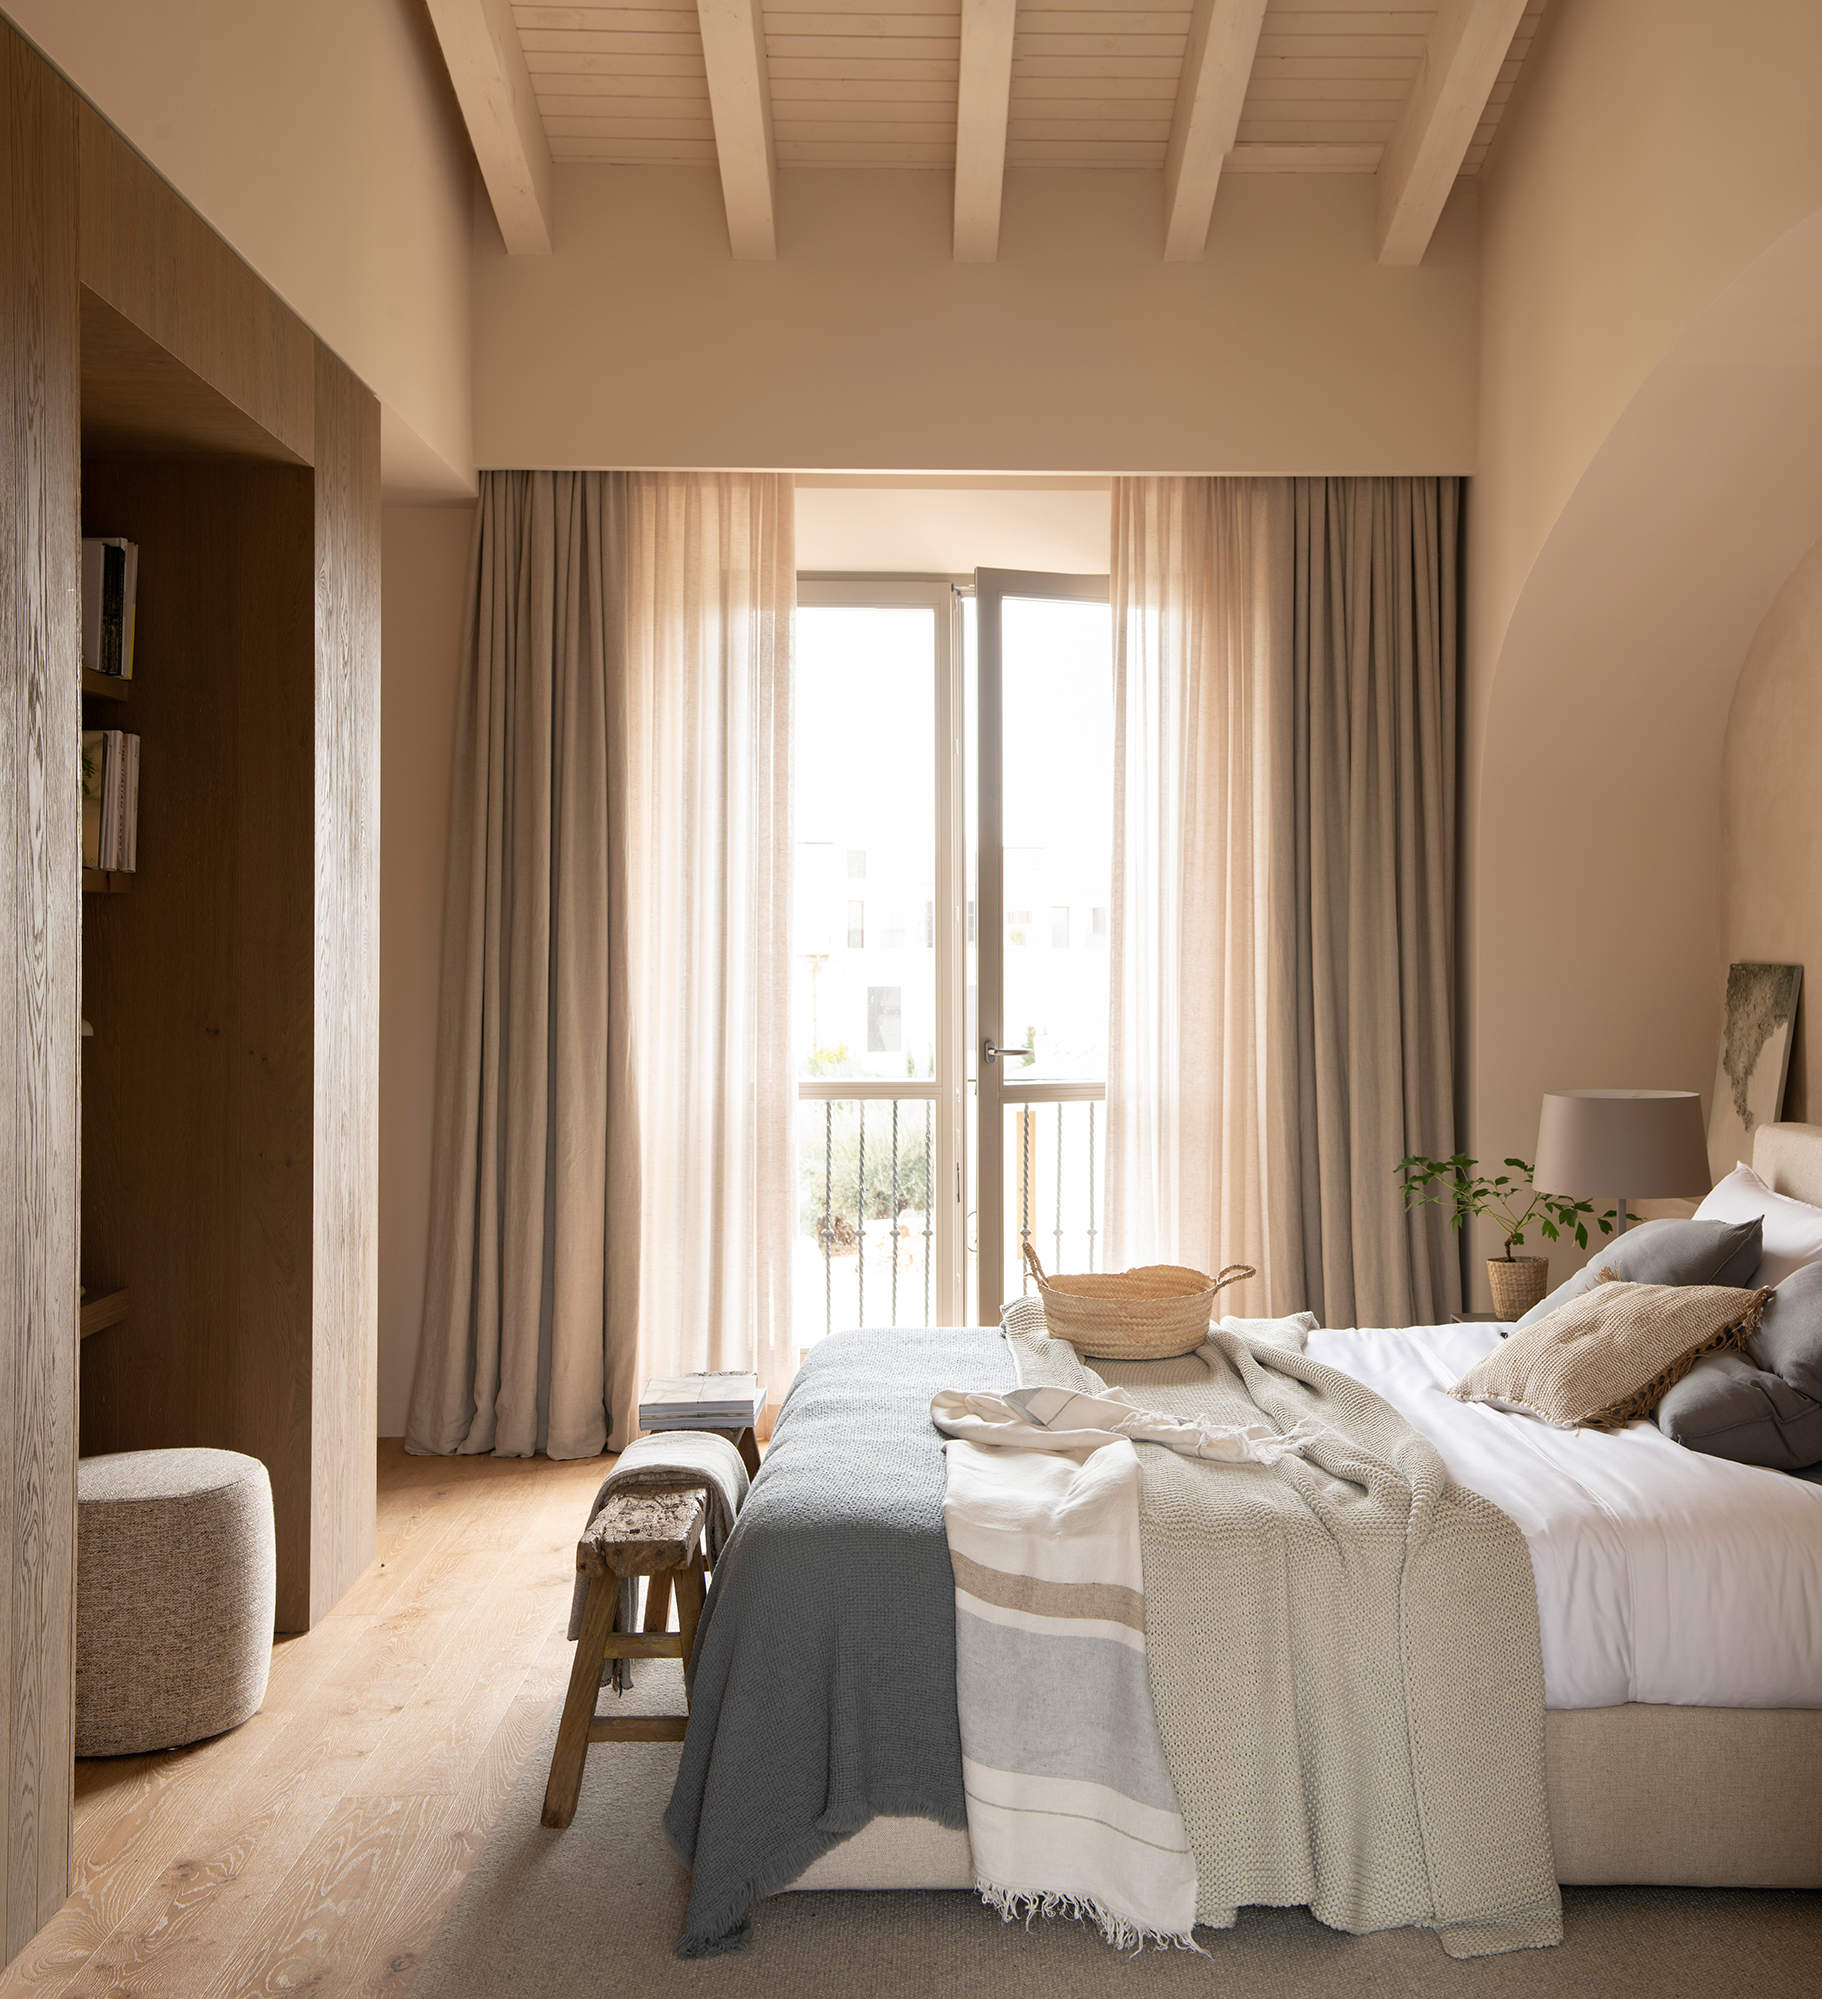 Dormitorio con visillos y cortinas de lino.